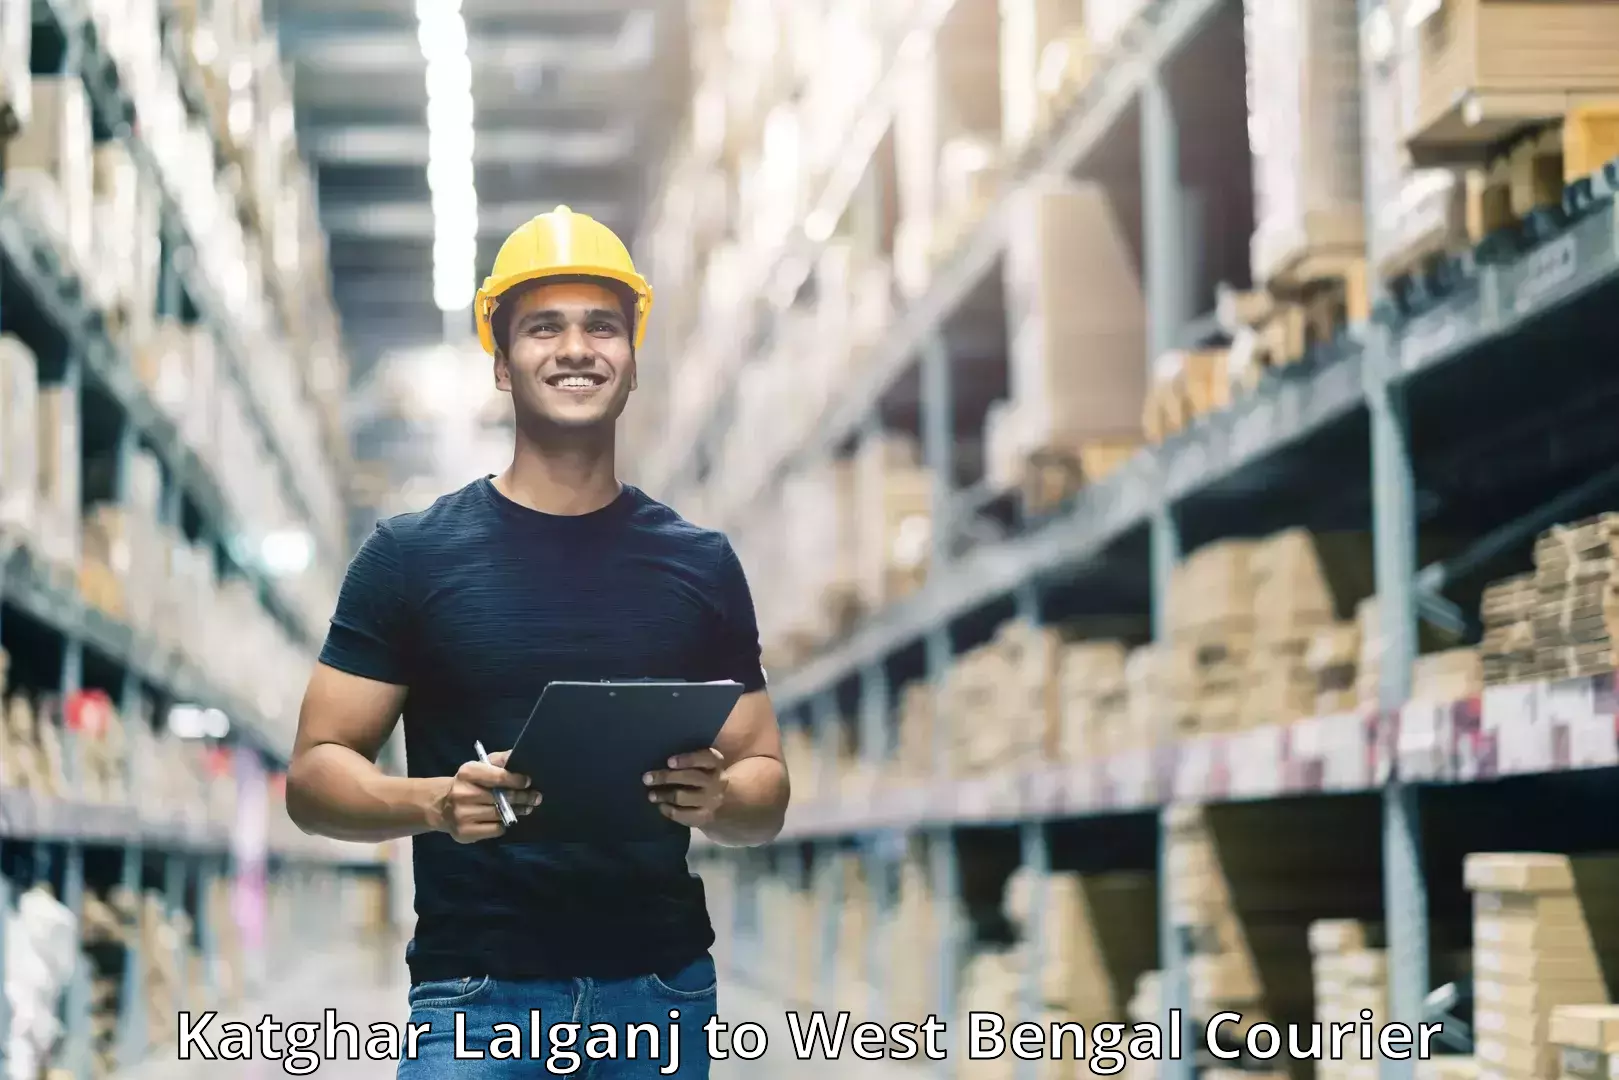 Global logistics network Katghar Lalganj to Manbazar